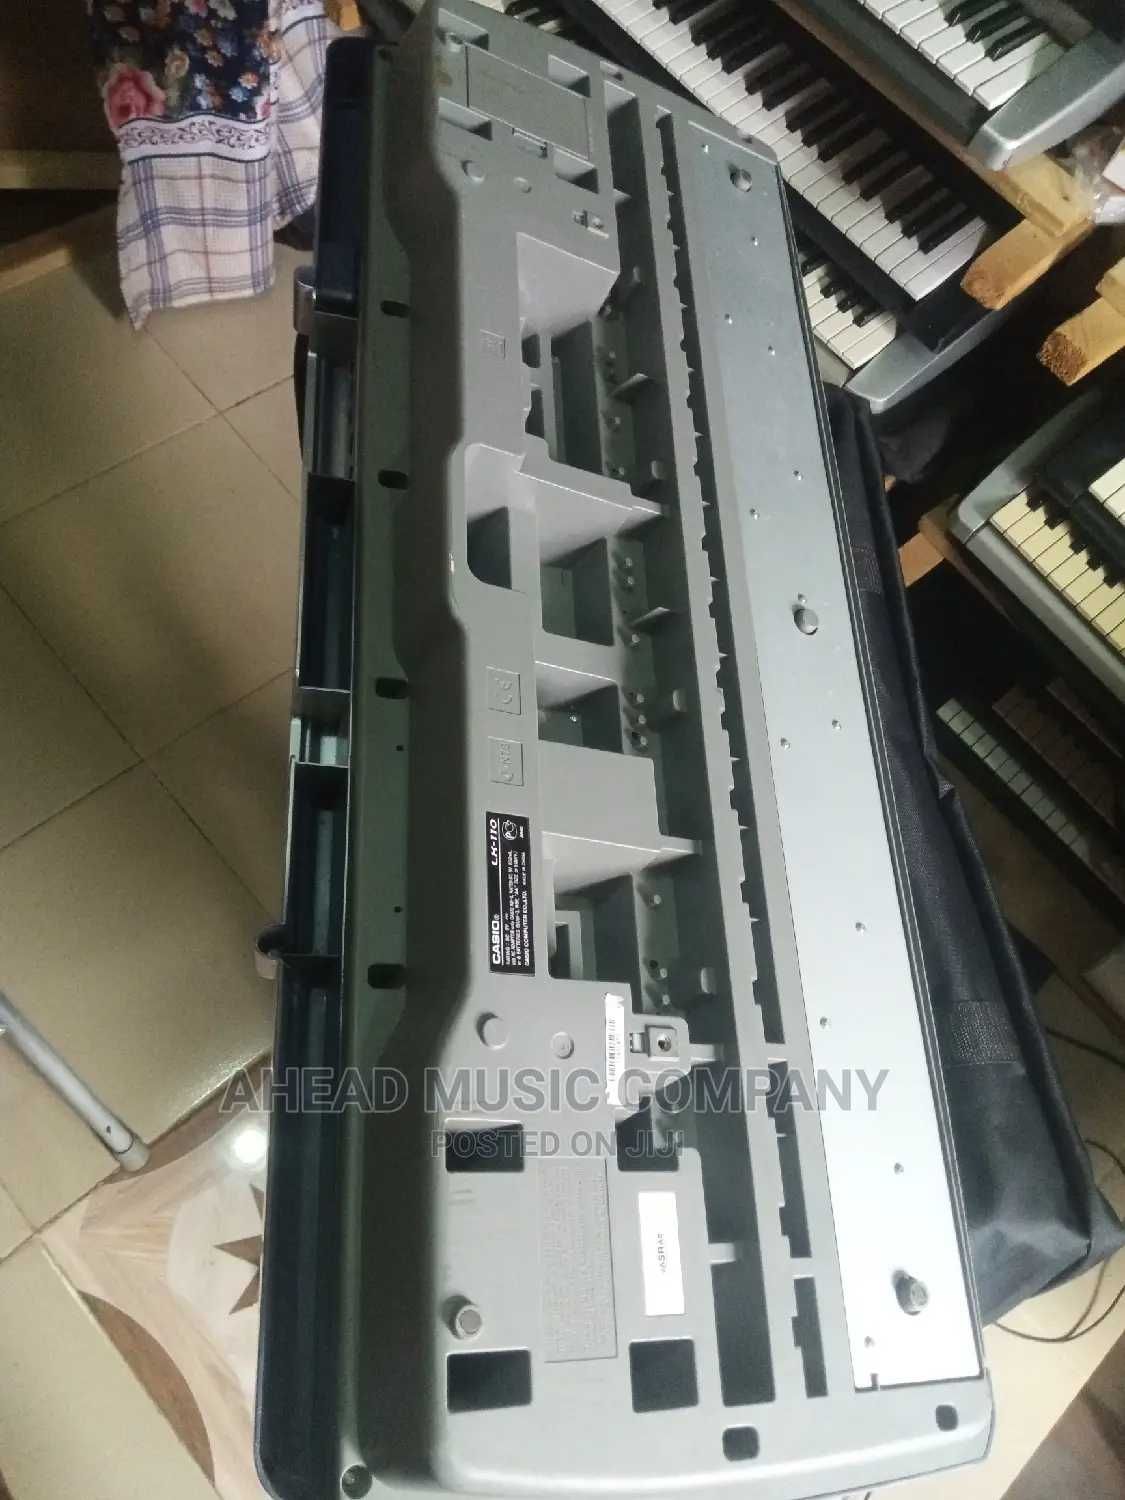 Синтезатор Casio LK-110 61 клавиша подсветка обучение США+БП